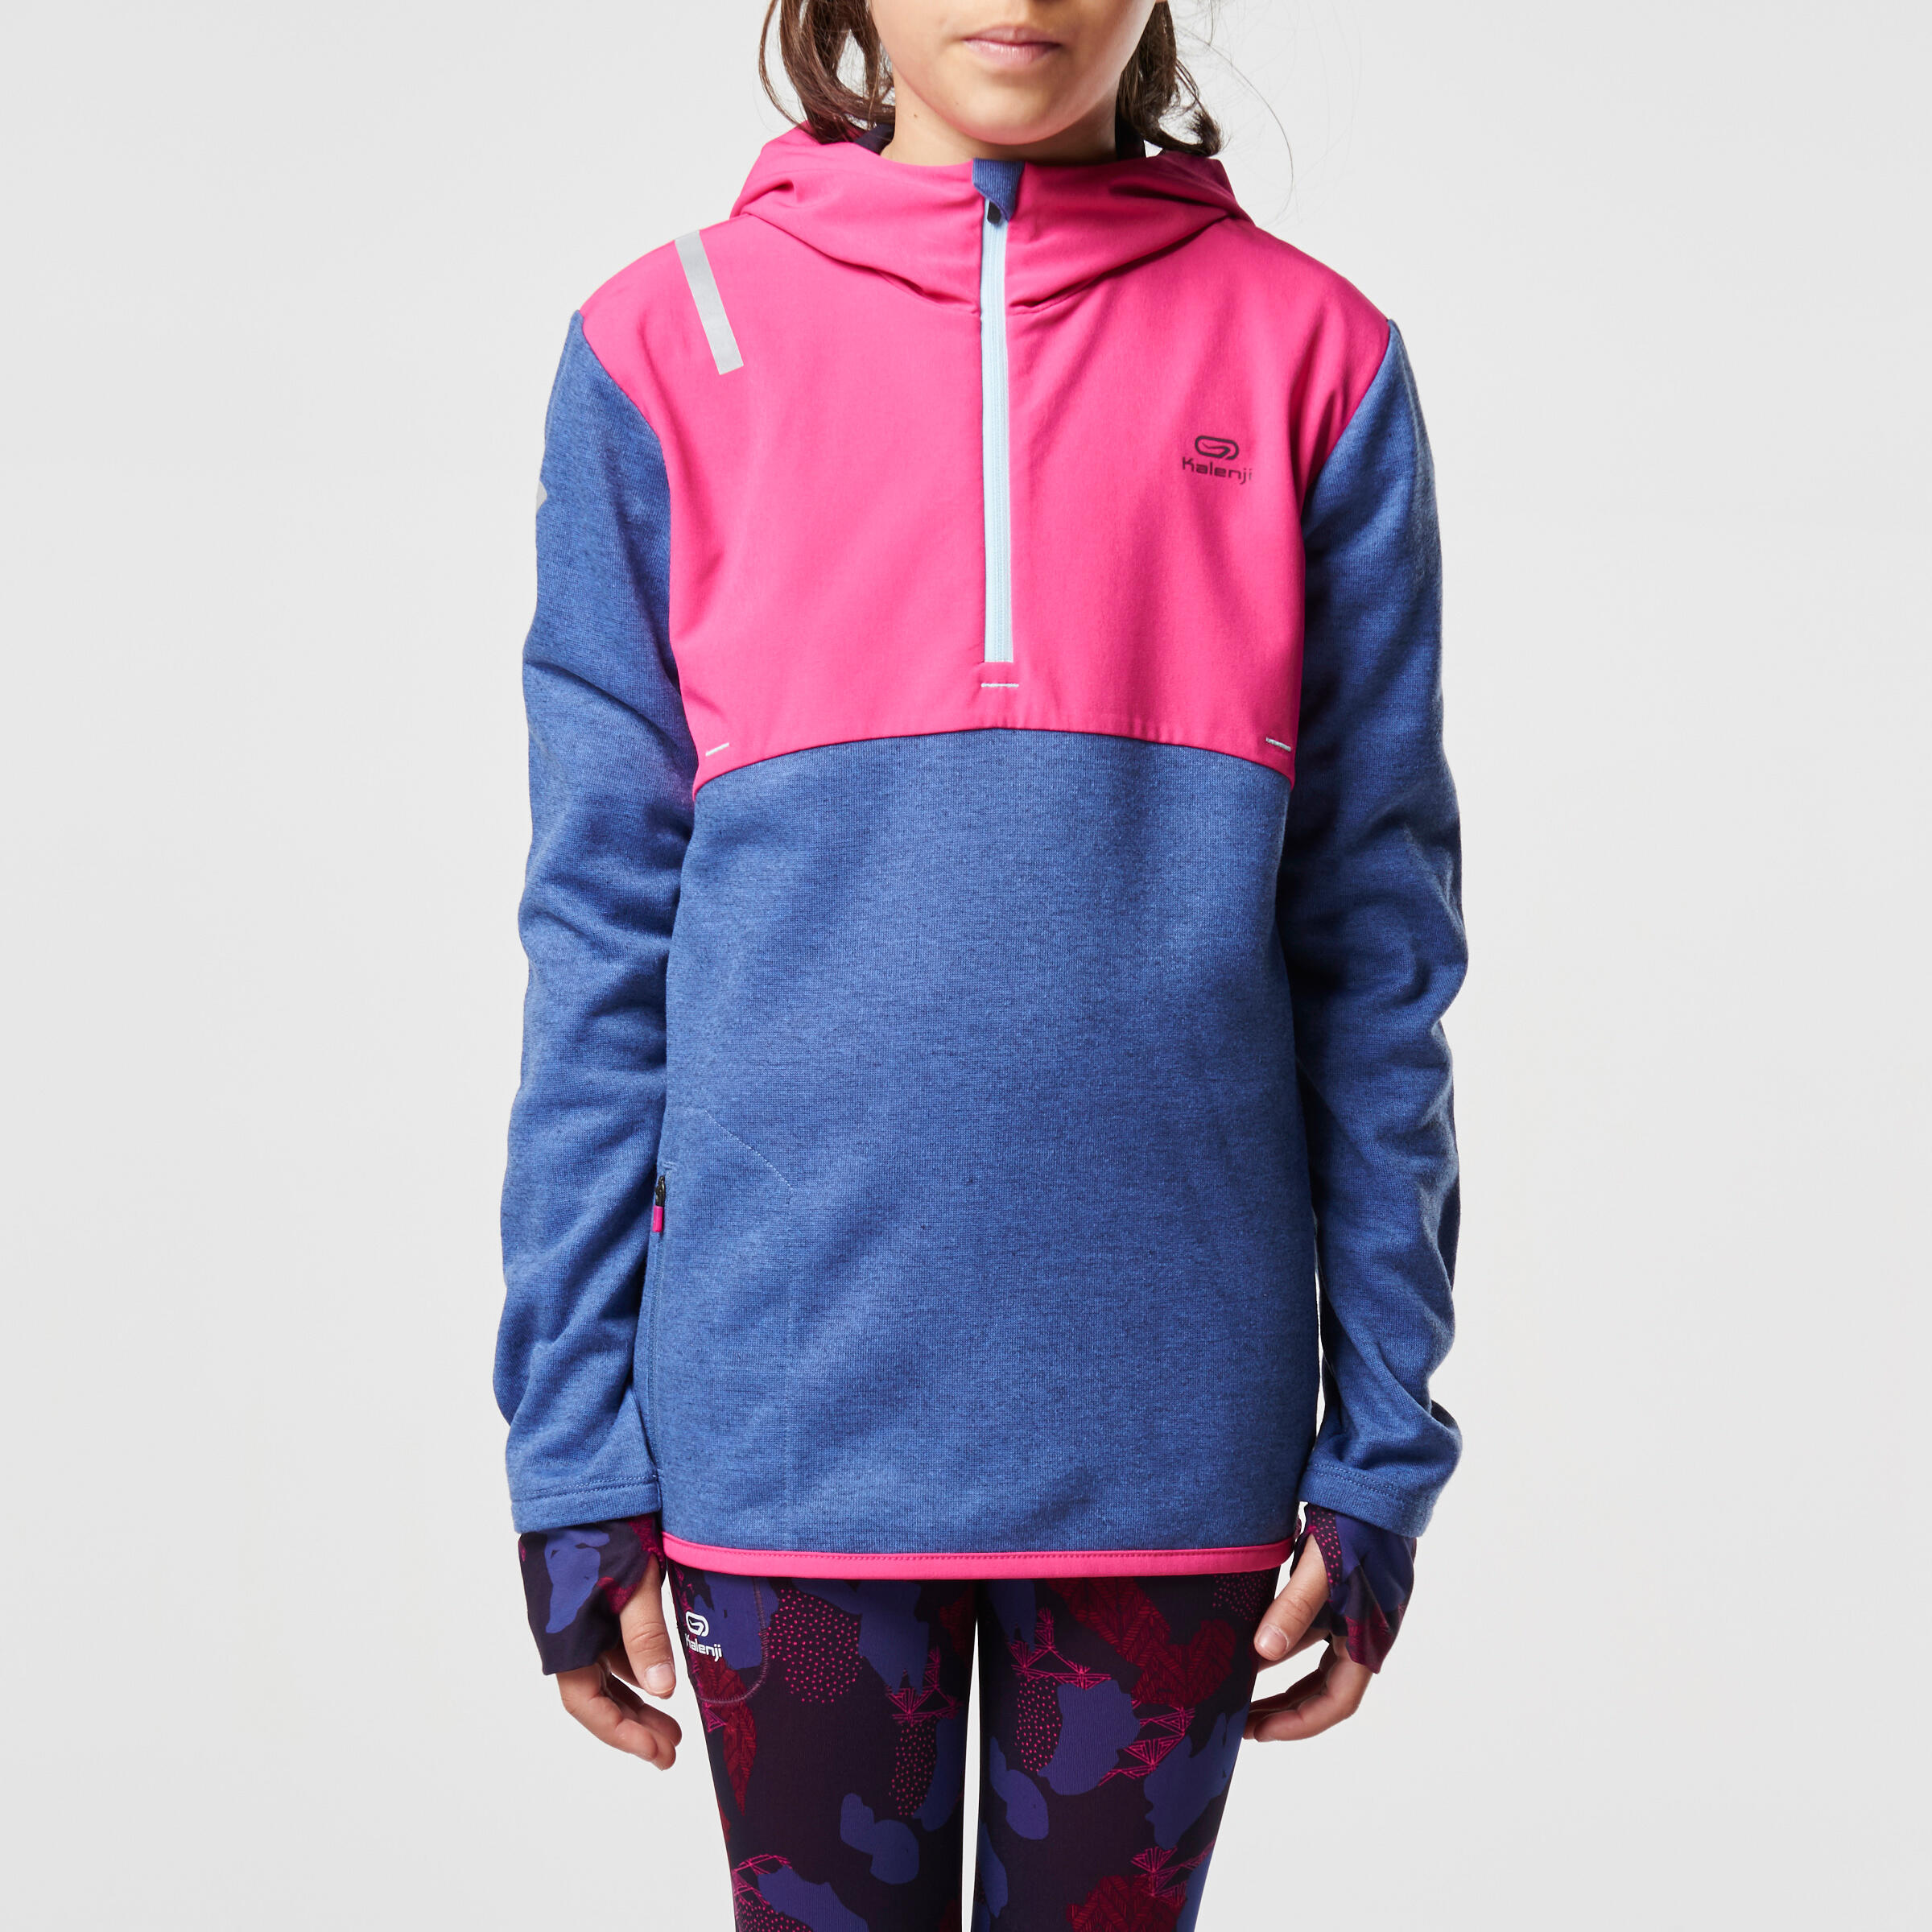 Elio Children's Running Hooded Jersey - Pink/Blue
 2/16